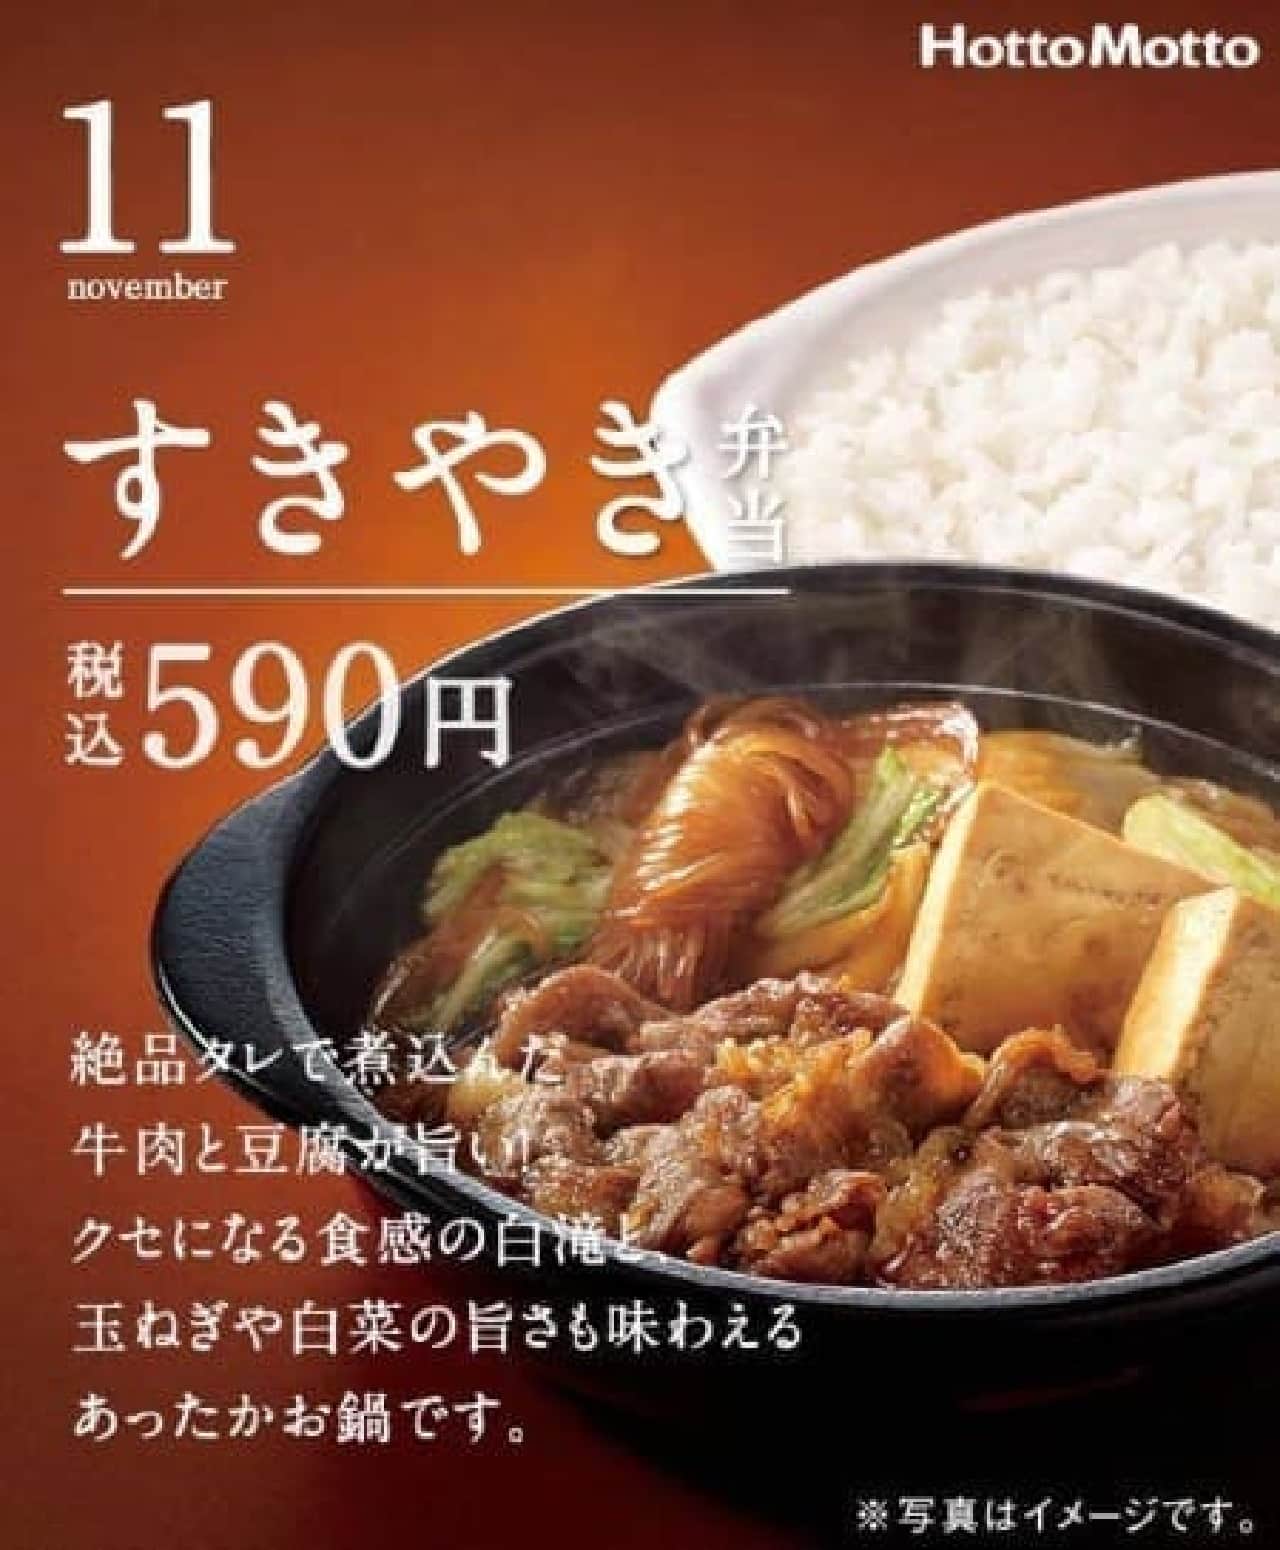 Hotto Motto "Sukiyaki Bento"